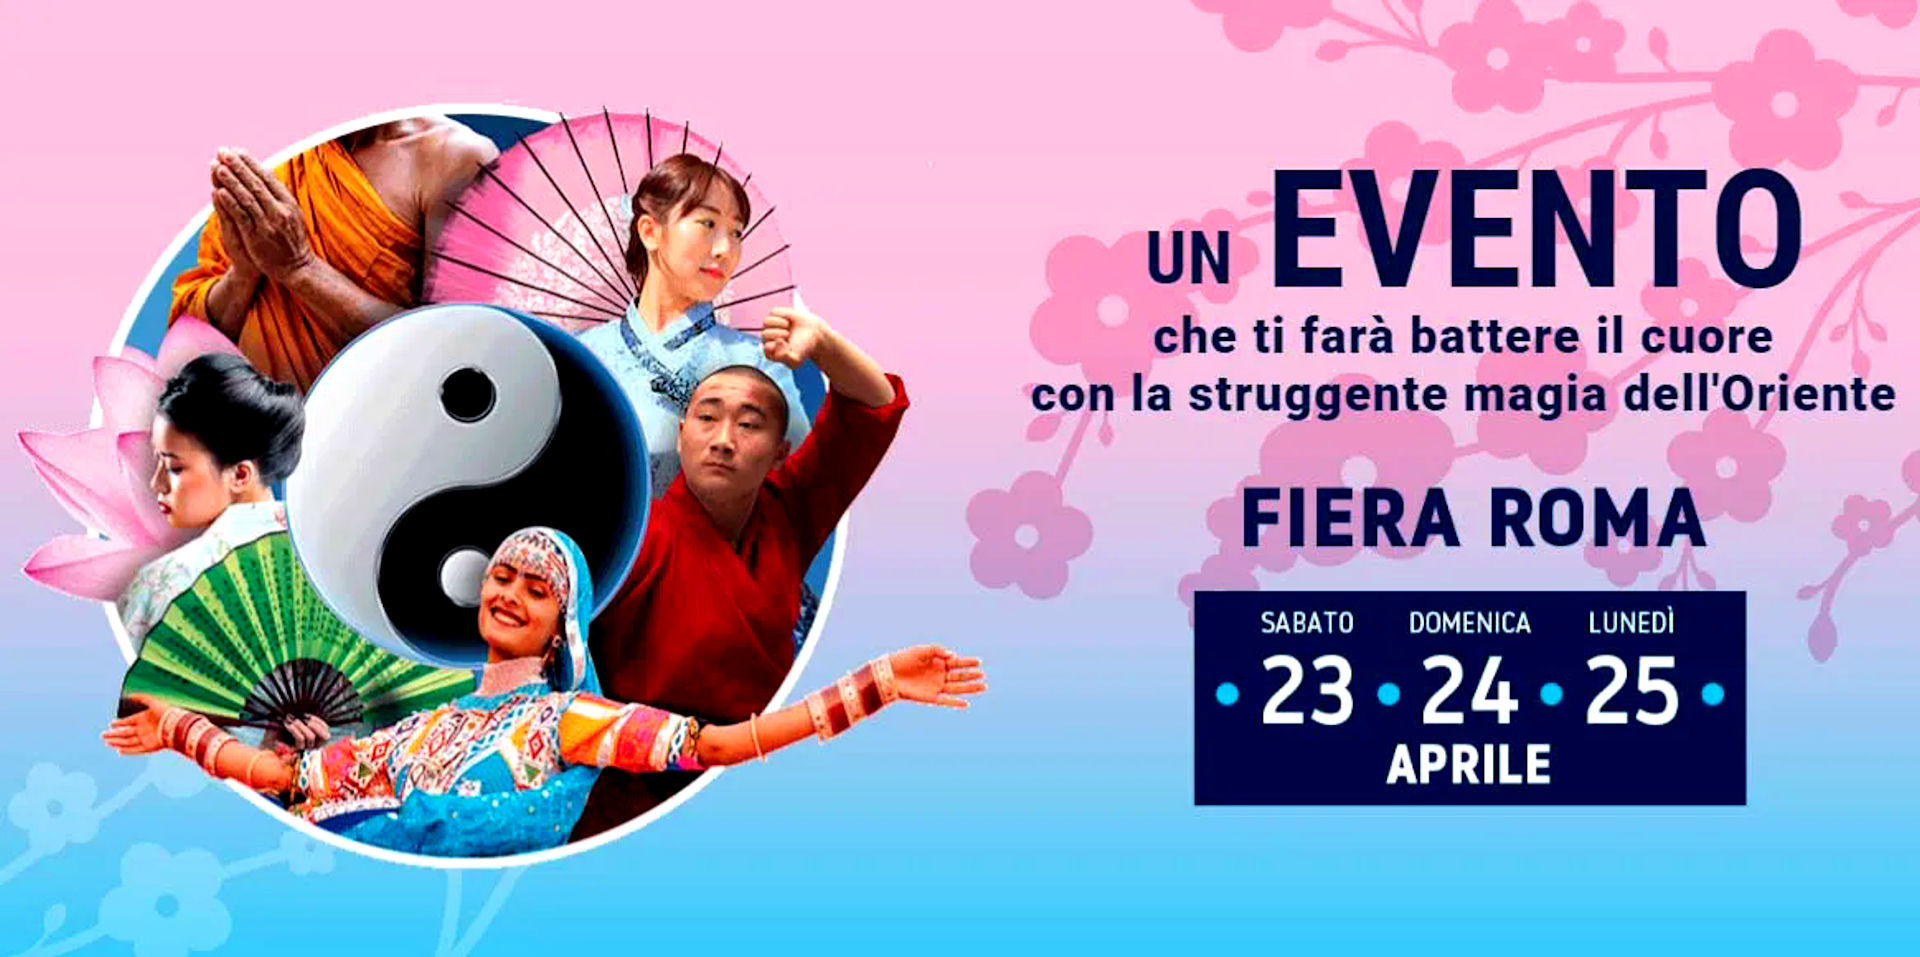 Festival dell’Oriente dal 24 al 25 aprile 2022 a Roma